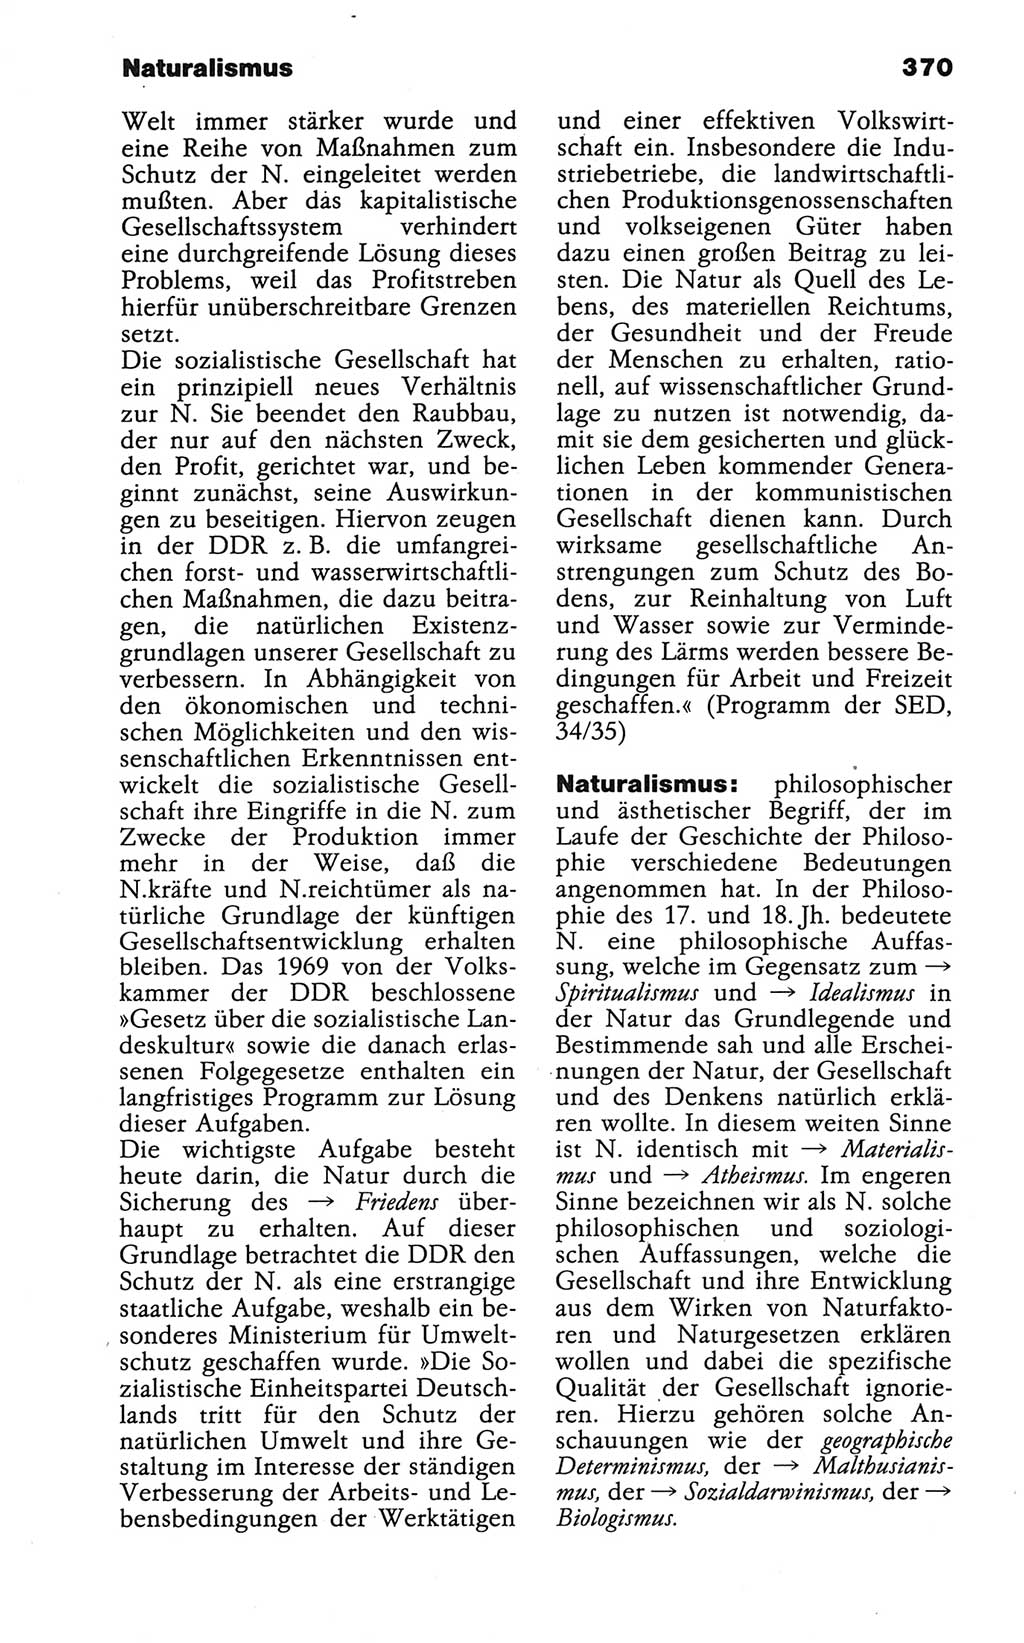 Wörterbuch der marxistisch-leninistischen Philosophie [Deutsche Demokratische Republik (DDR)] 1986, Seite 370 (Wb. ML Phil. DDR 1986, S. 370)